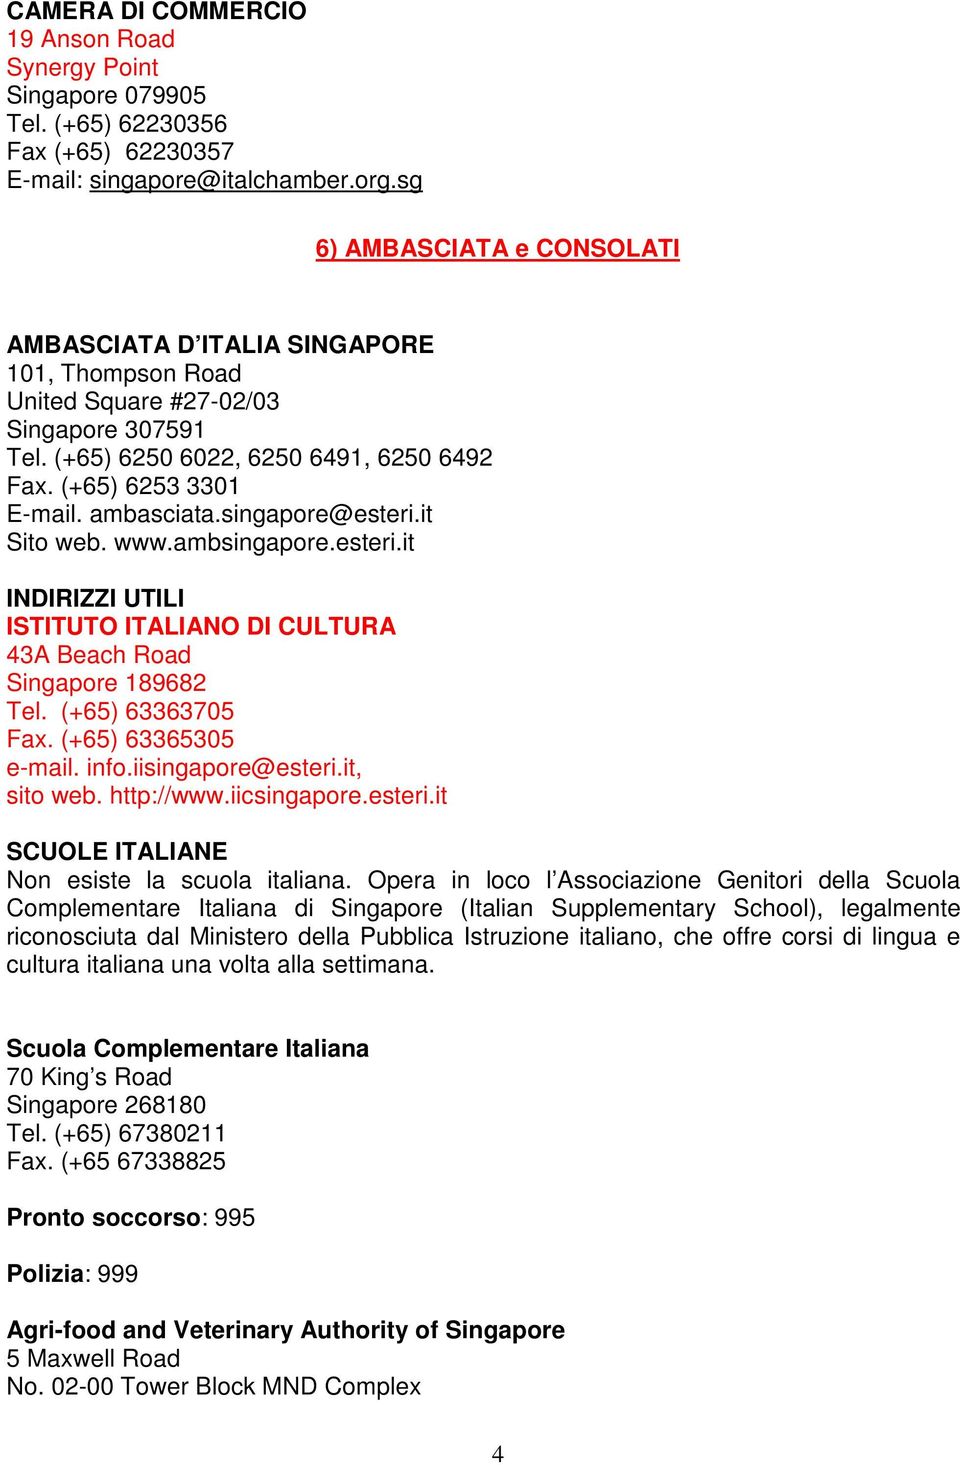 ambasciata.singapore@esteri.it Sito web. www.ambsingapore.esteri.it INDIRIZZI UTILI ISTITUTO ITALIANO DI CULTURA 43A Beach Road Singapore 189682 Tel. (+65) 63363705 Fax. (+65) 63365305 e-mail. info.